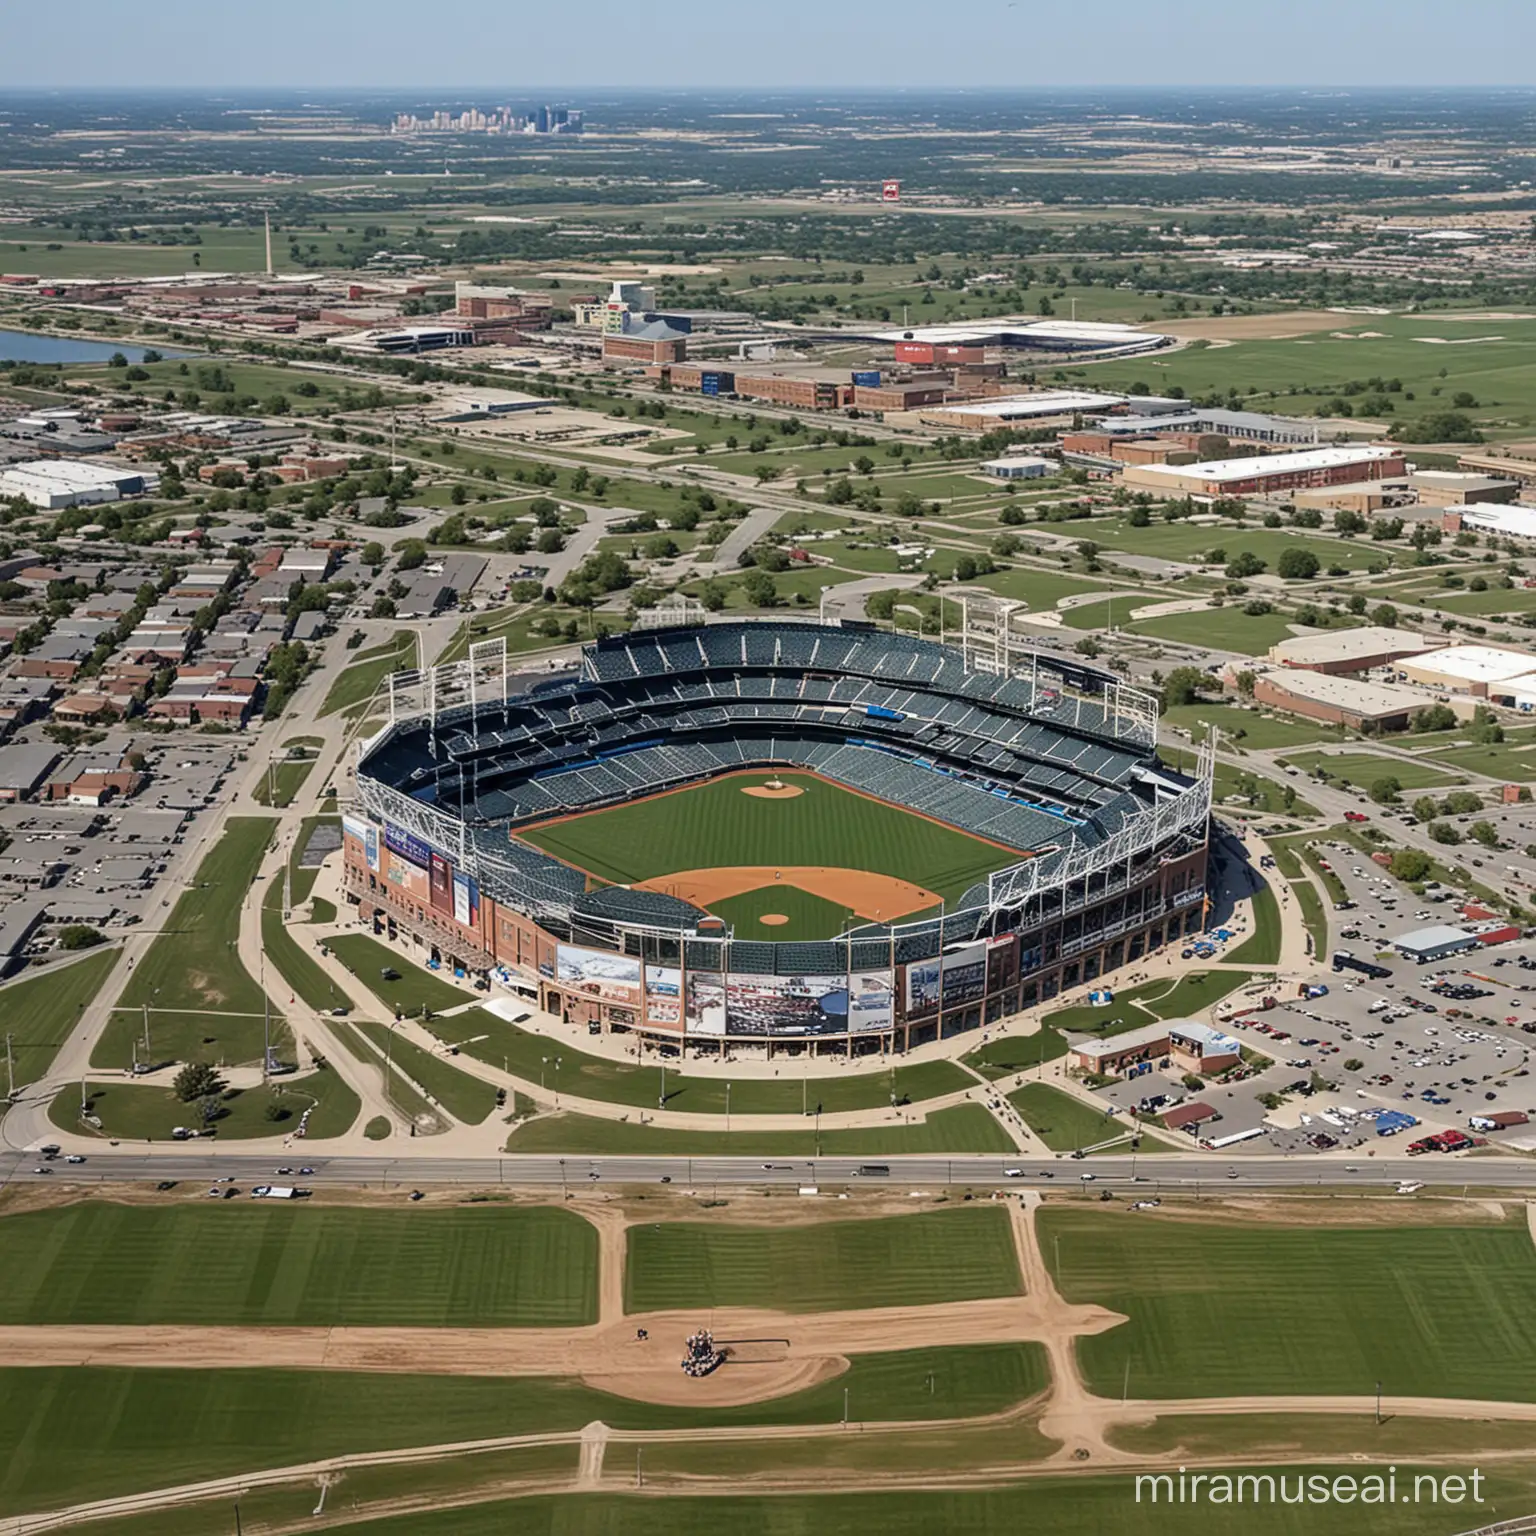 MLB baseball stadium, in the skyline of Spring Hill Kansas